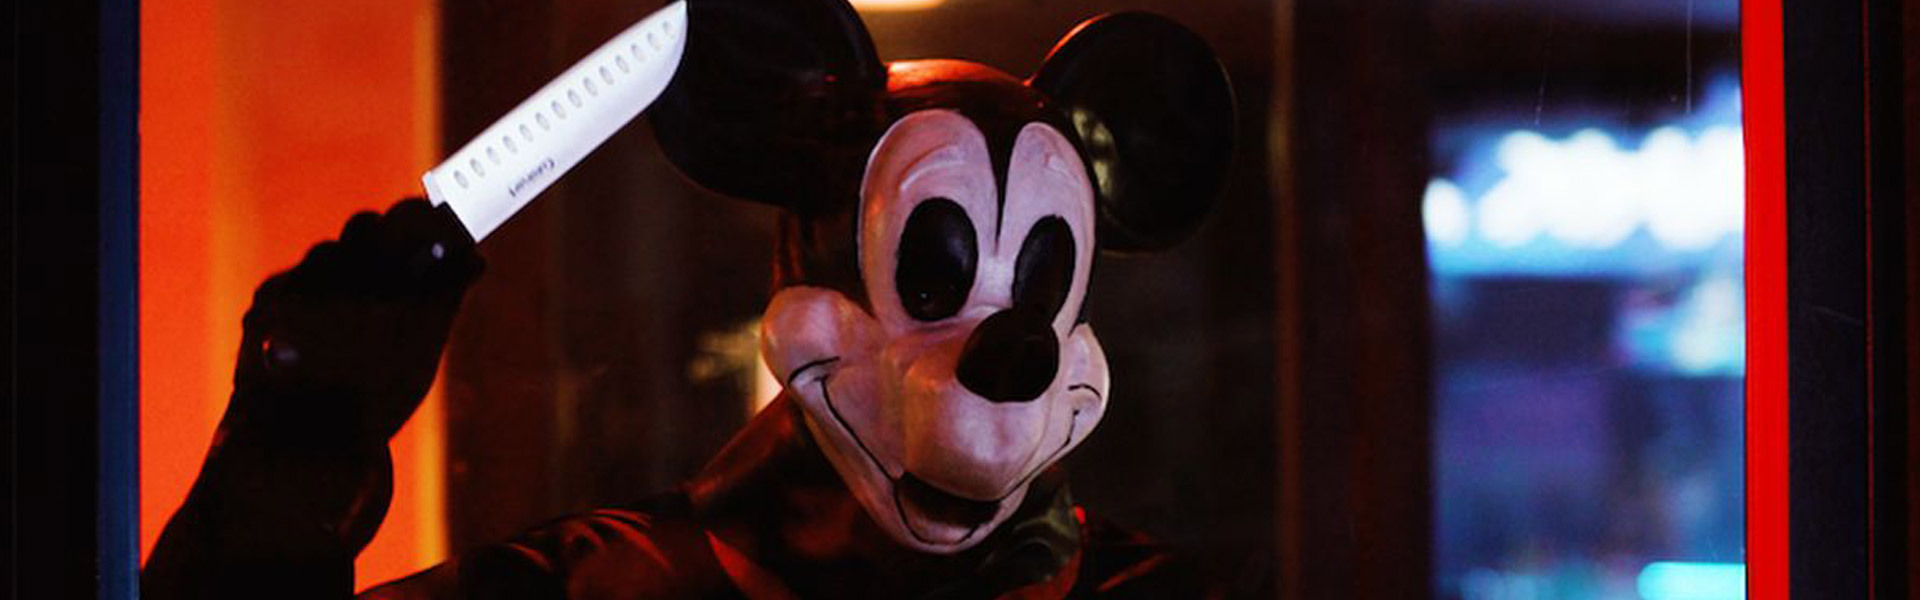 ‘Mickey’s Mouse Trap’: tudo sobre o filme de terror com Mickey Mouse